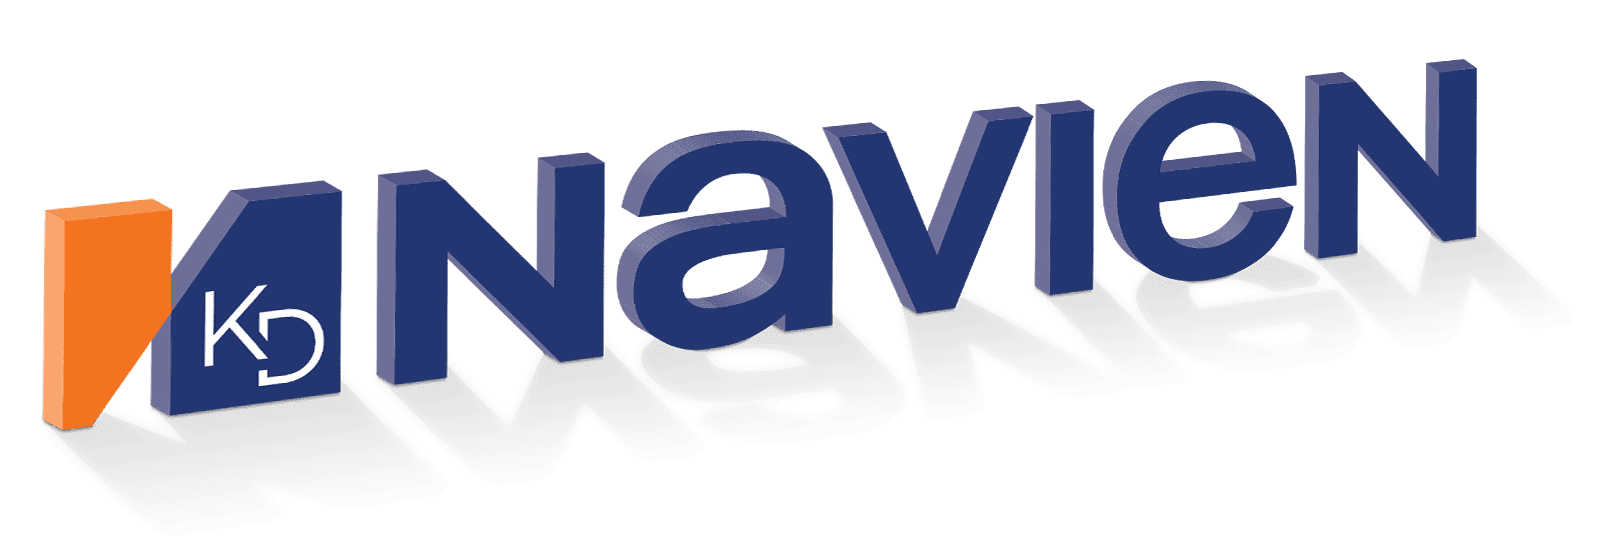 navien-2021-3d-logo-about